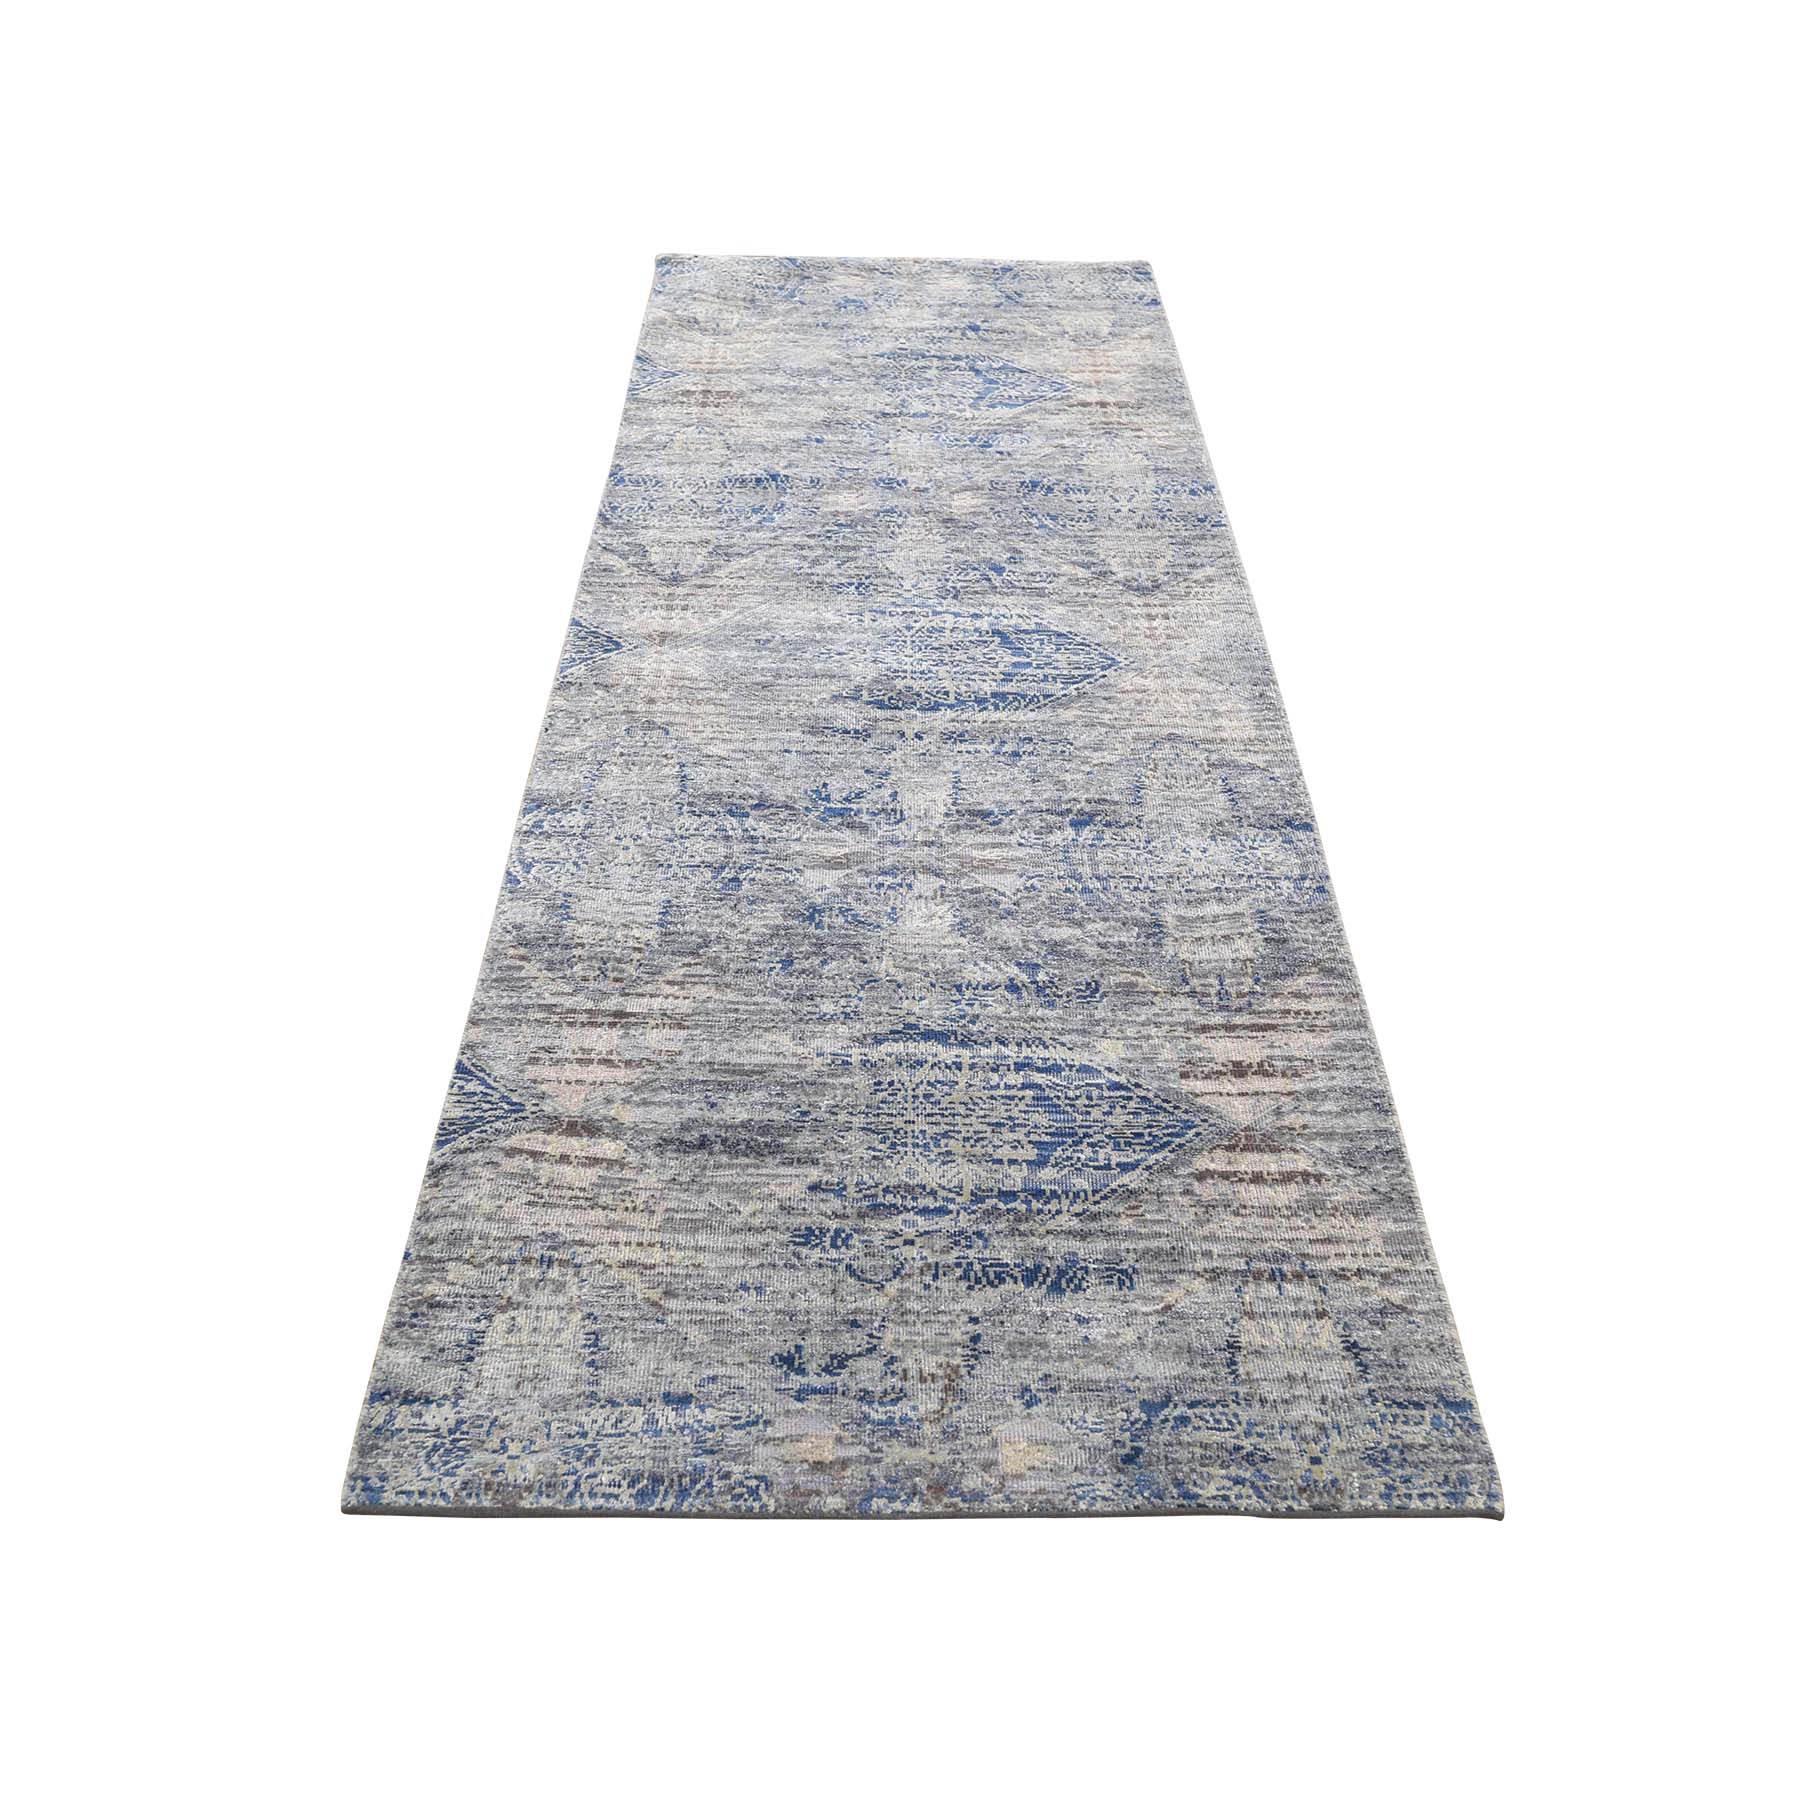 2'5"x8'2" ERASED ROSSETS,Silk With Textured Wool Denim Blue Runner Hand Woven Oriental Rug 